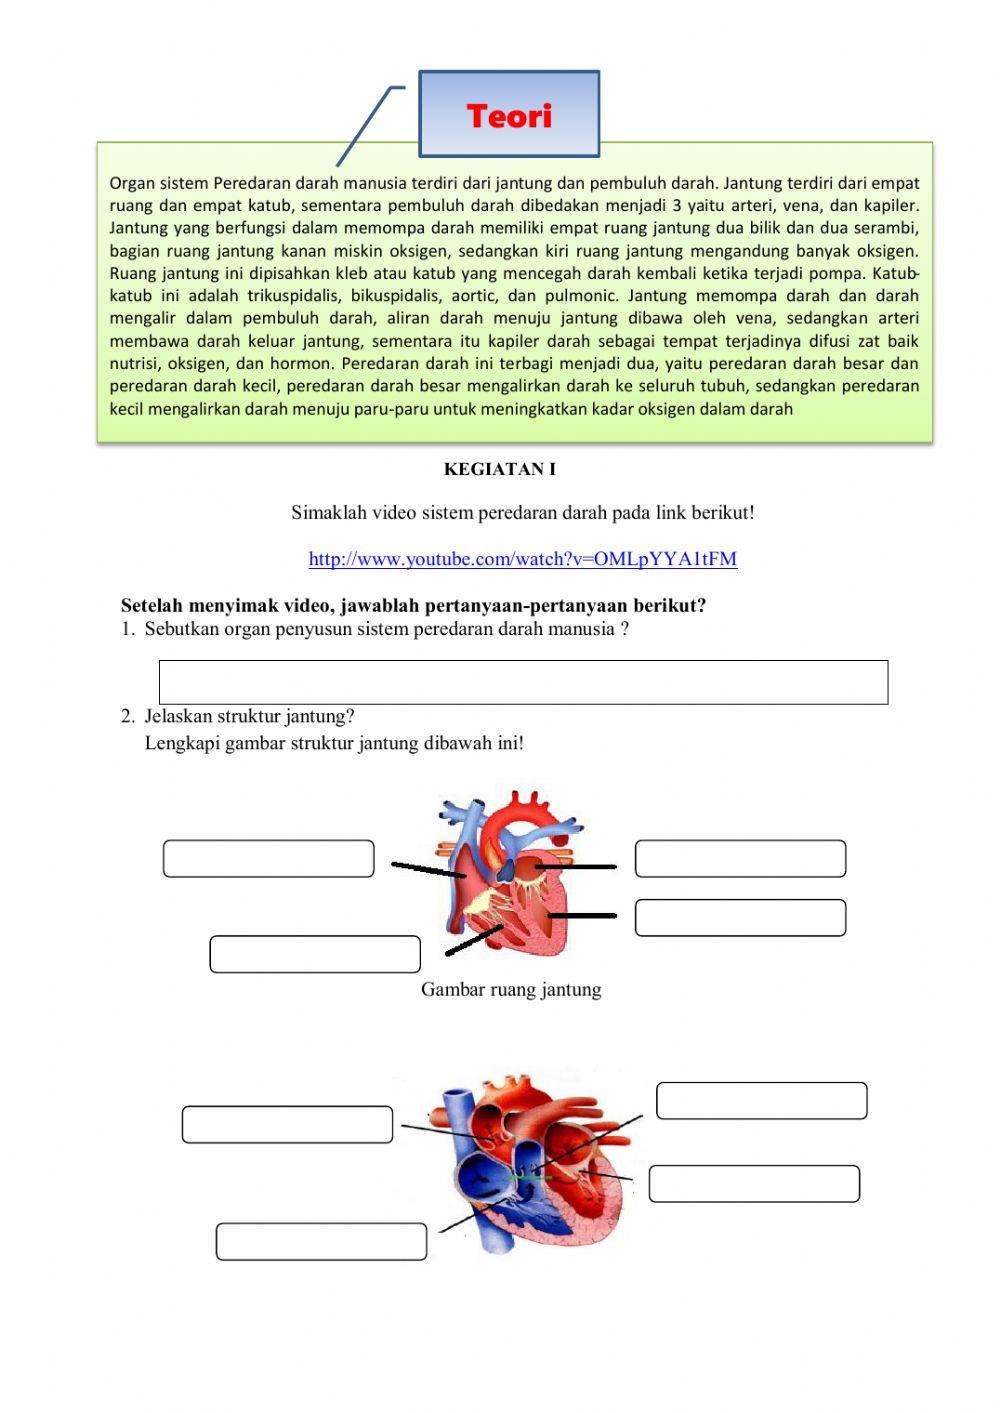 LKPD Organ dan Sistem Peredaran Darah